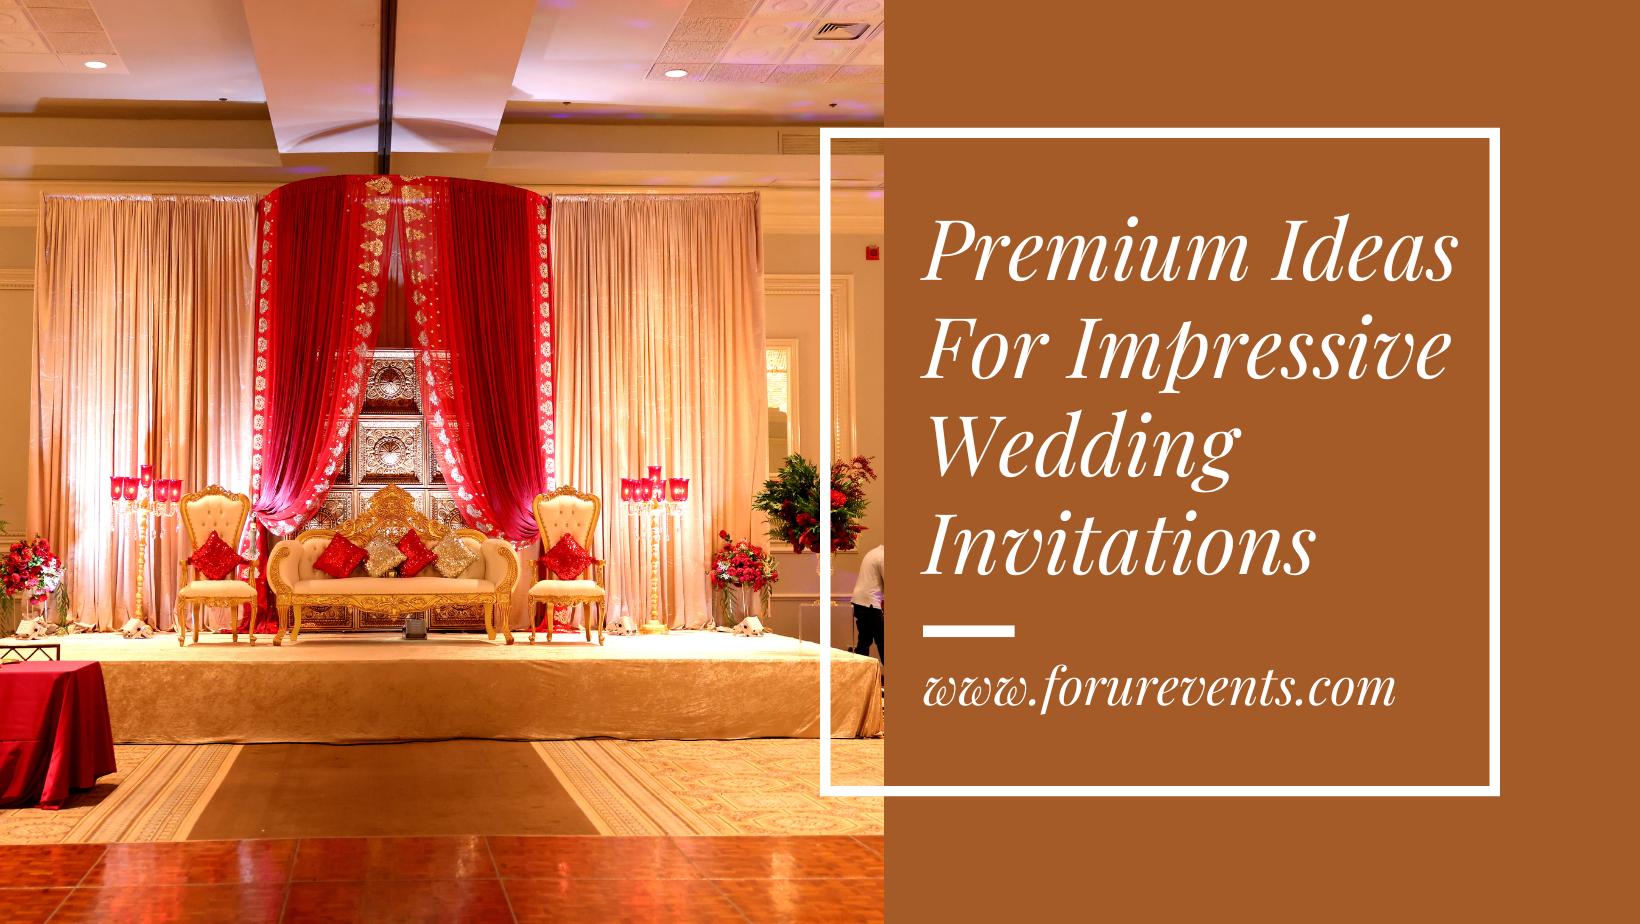 Premium Ideas For Impressive Wedding Invitations - Forurevents